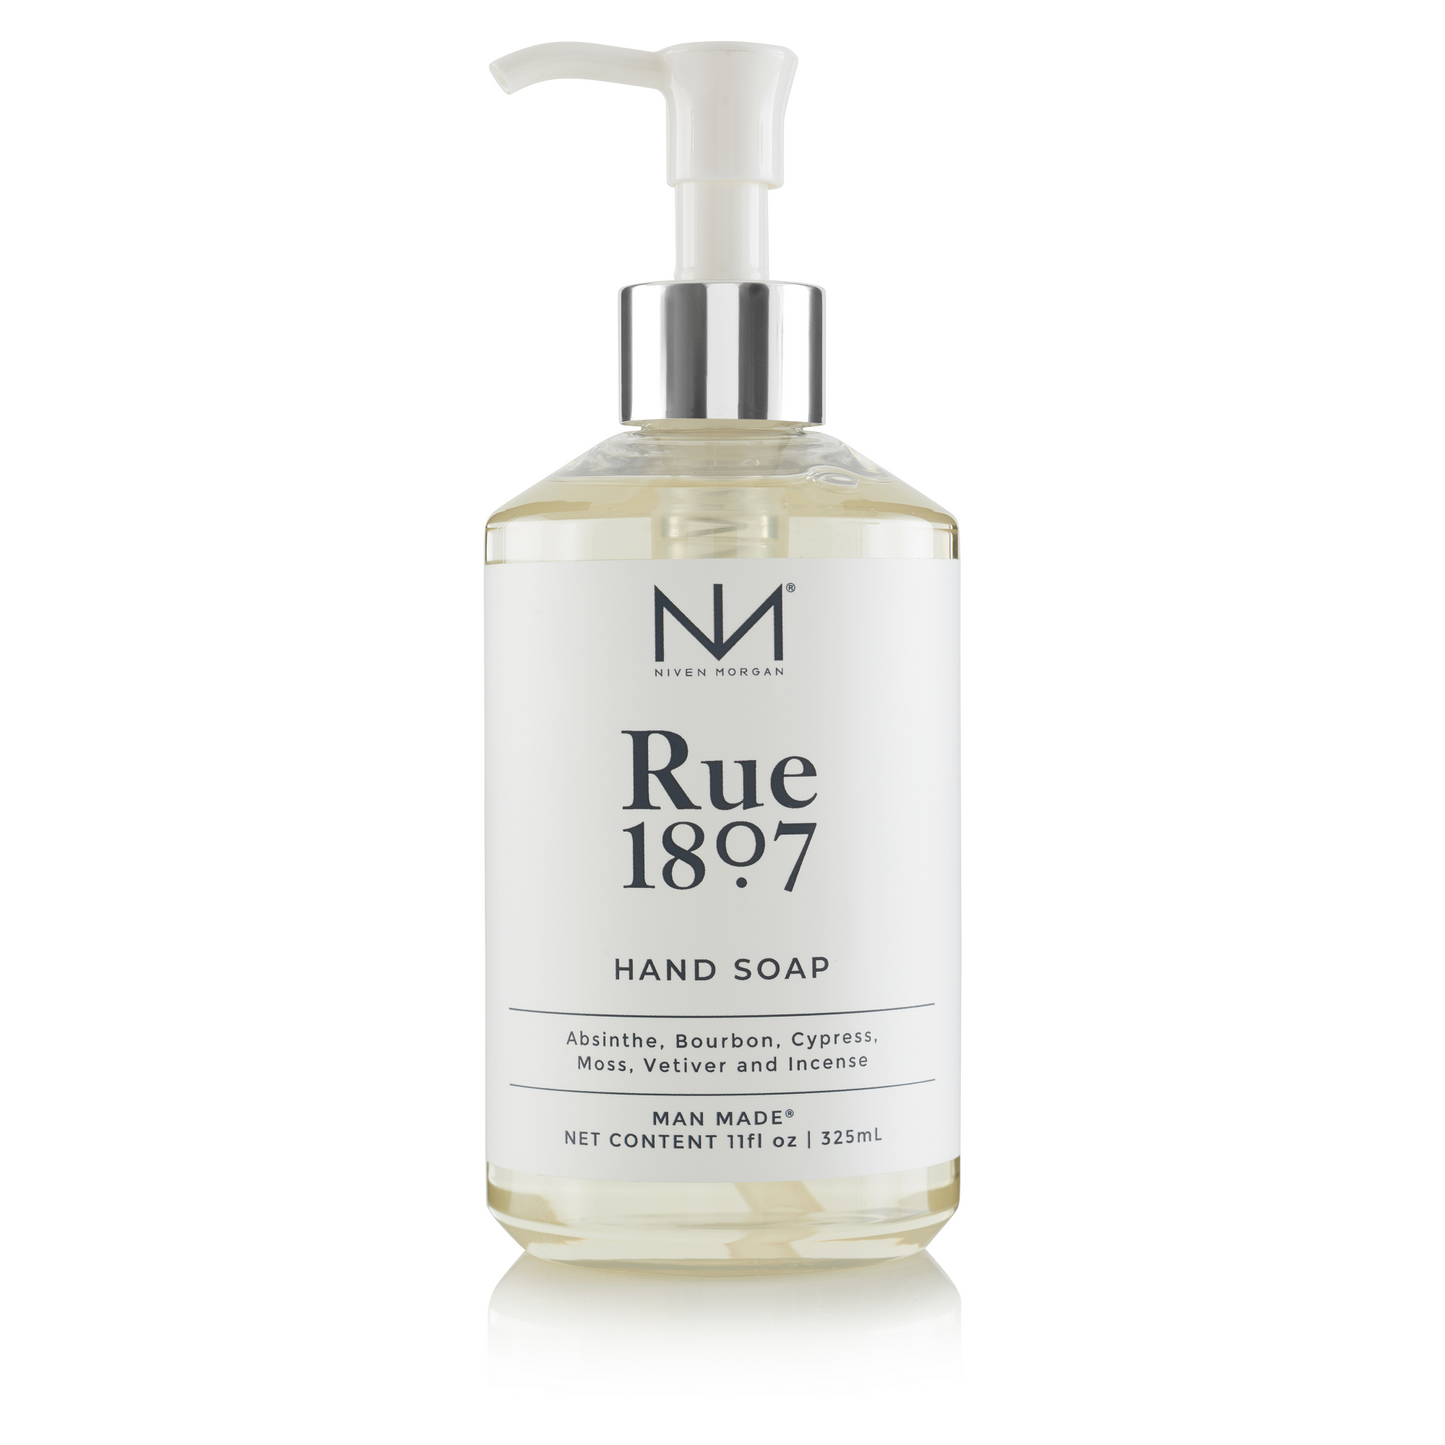 Niven Morgan Rue 1807 Hand Soap